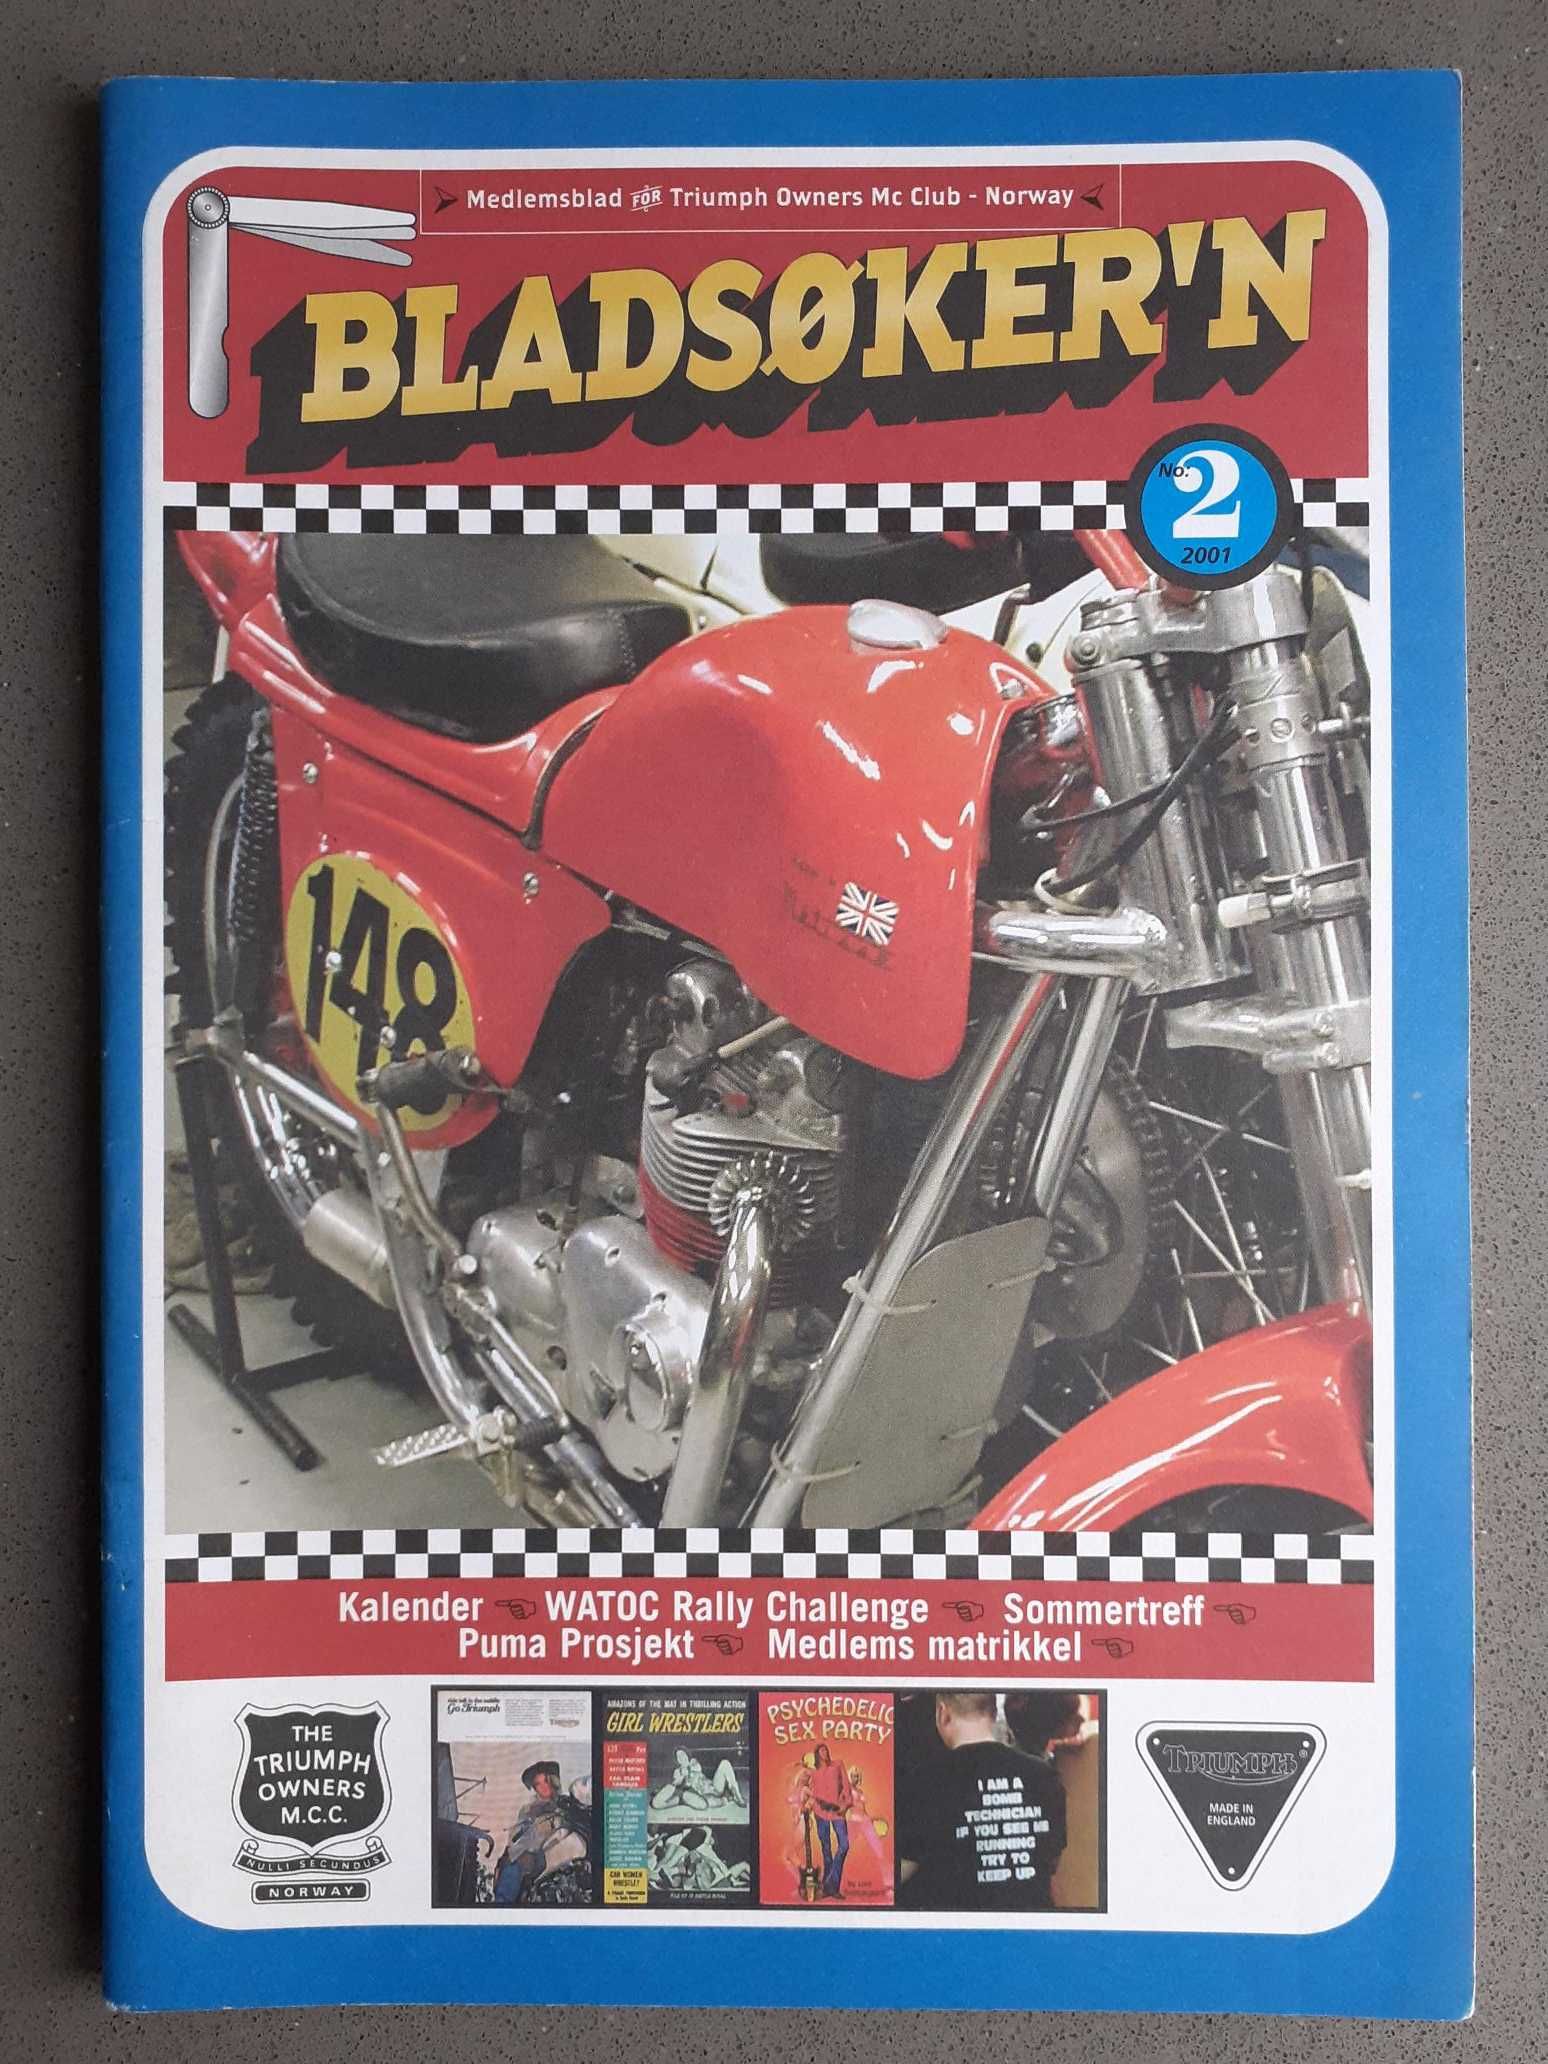 Revistas Antigas Bladsoker'n (Moto Clube Triumph Noruega)